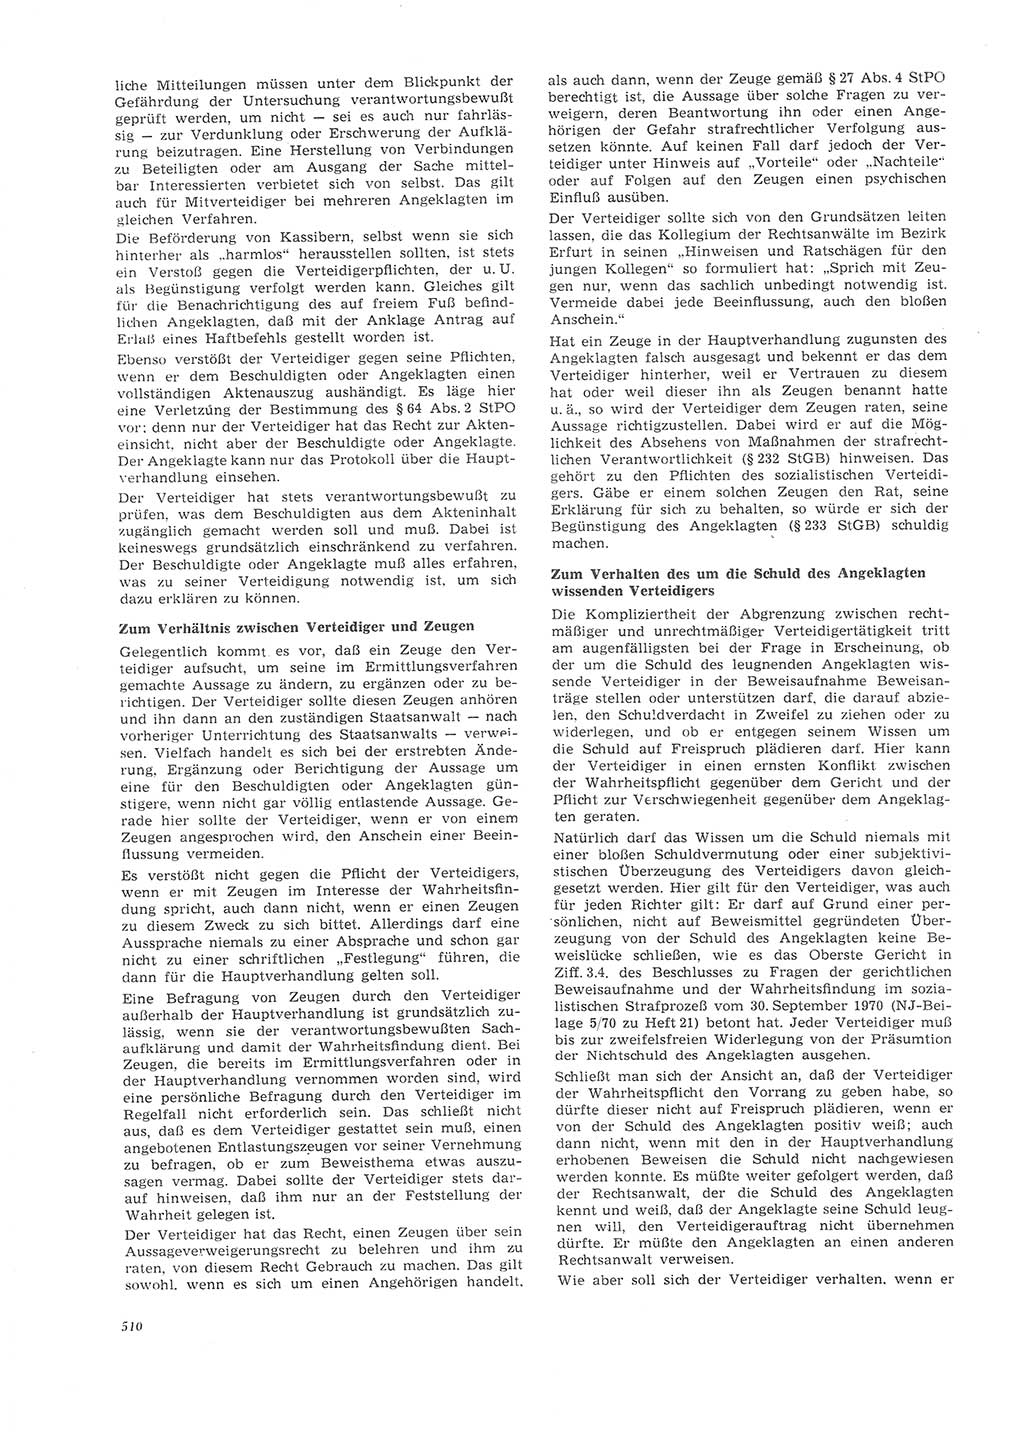 Neue Justiz (NJ), Zeitschrift für Recht und Rechtswissenschaft [Deutsche Demokratische Republik (DDR)], 26. Jahrgang 1972, Seite 510 (NJ DDR 1972, S. 510)